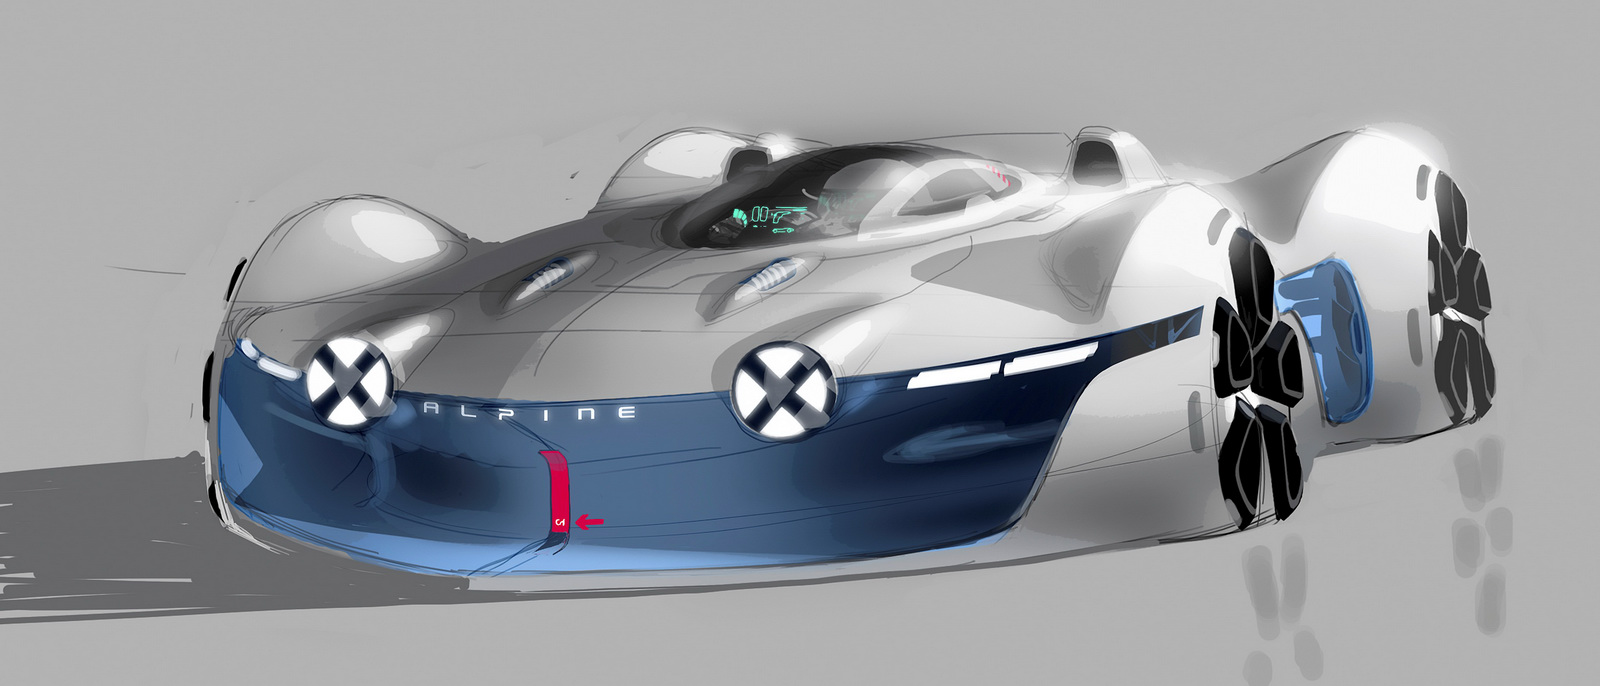 Alpine Vision Gran Turismo (2015) - Design Sketch by Yann Jarsalle